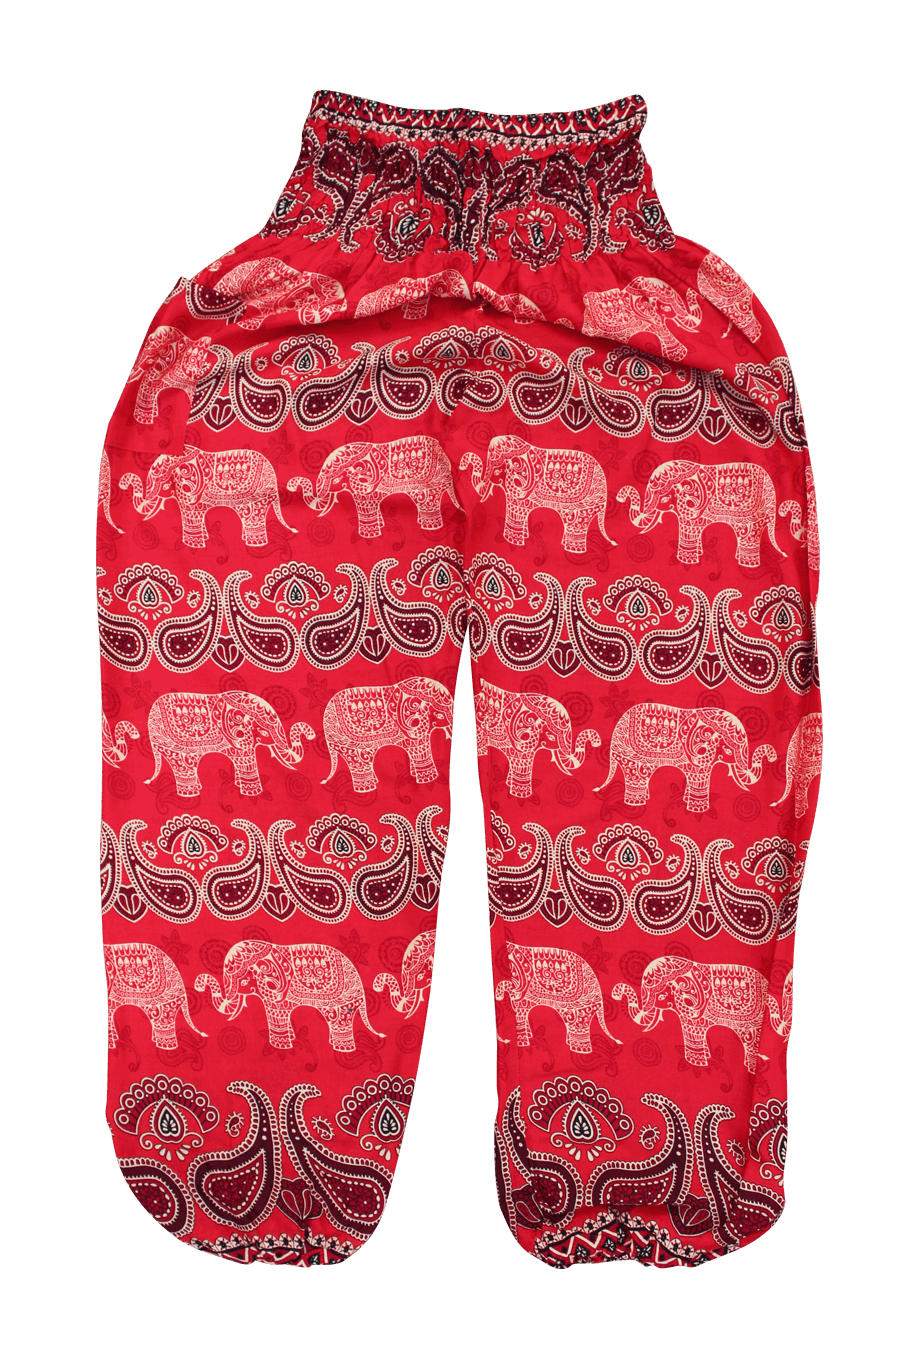 Malee Elephant Harem Pants from Bohemian Island